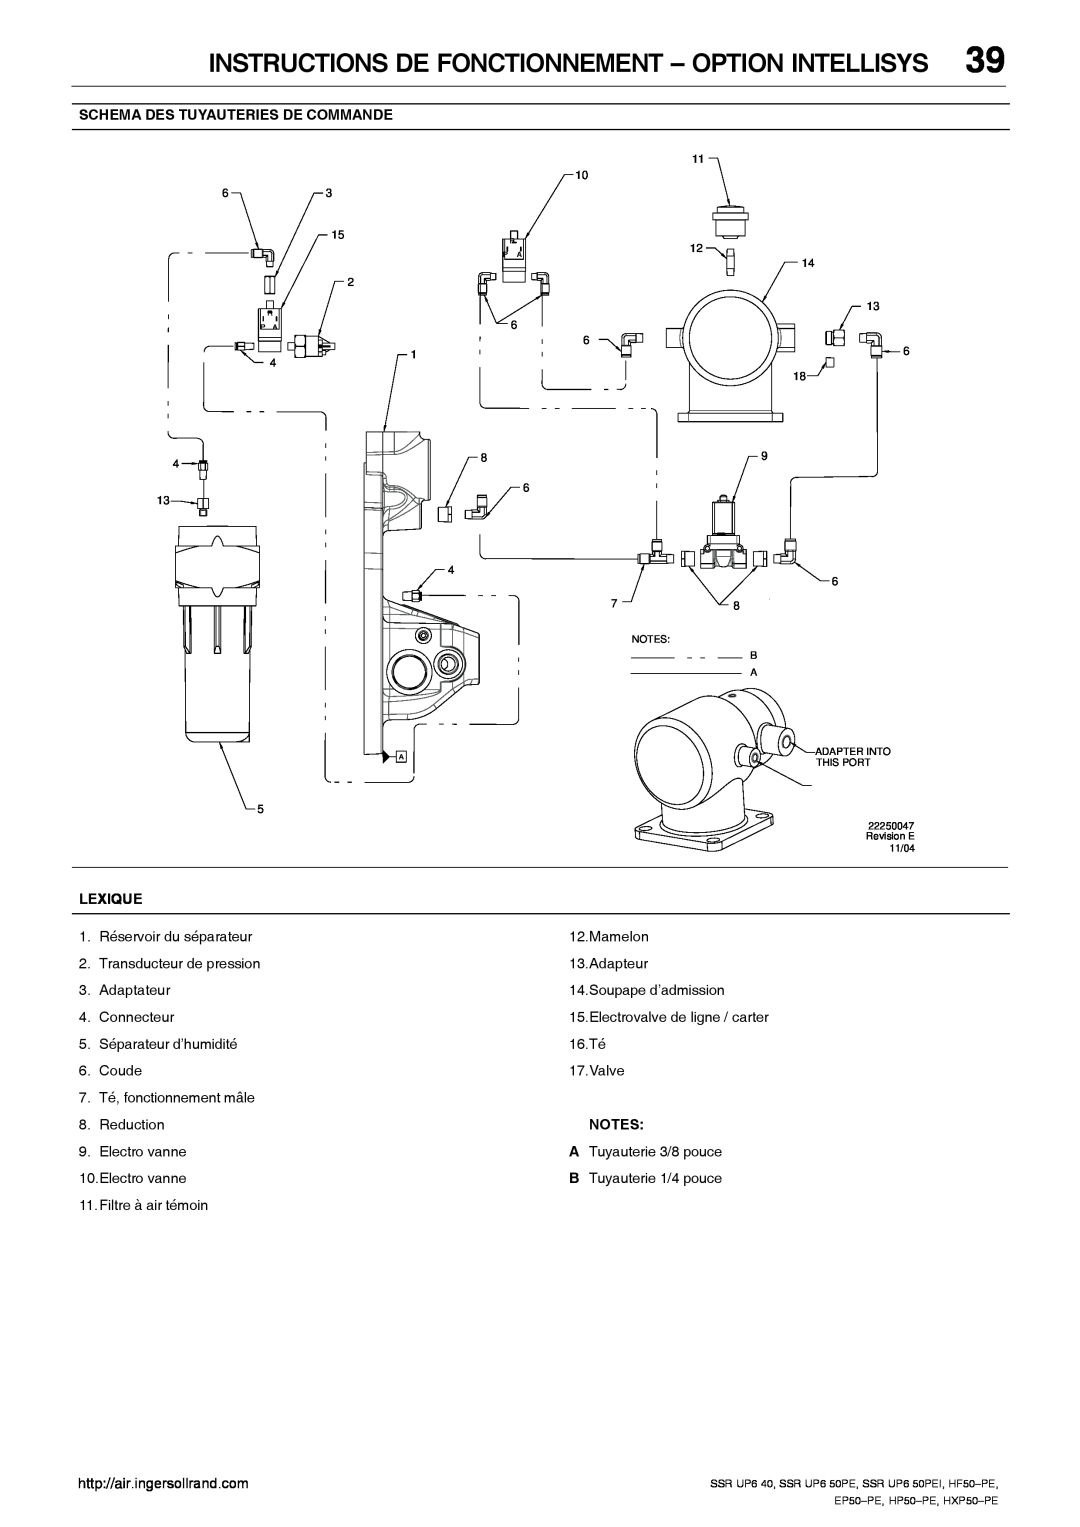 Ingersoll-Rand HP50-PE, SSR UP6 40 manual Instructions De Fonctionnement - Option Intellisys, Electrovalve de ligne / carter 